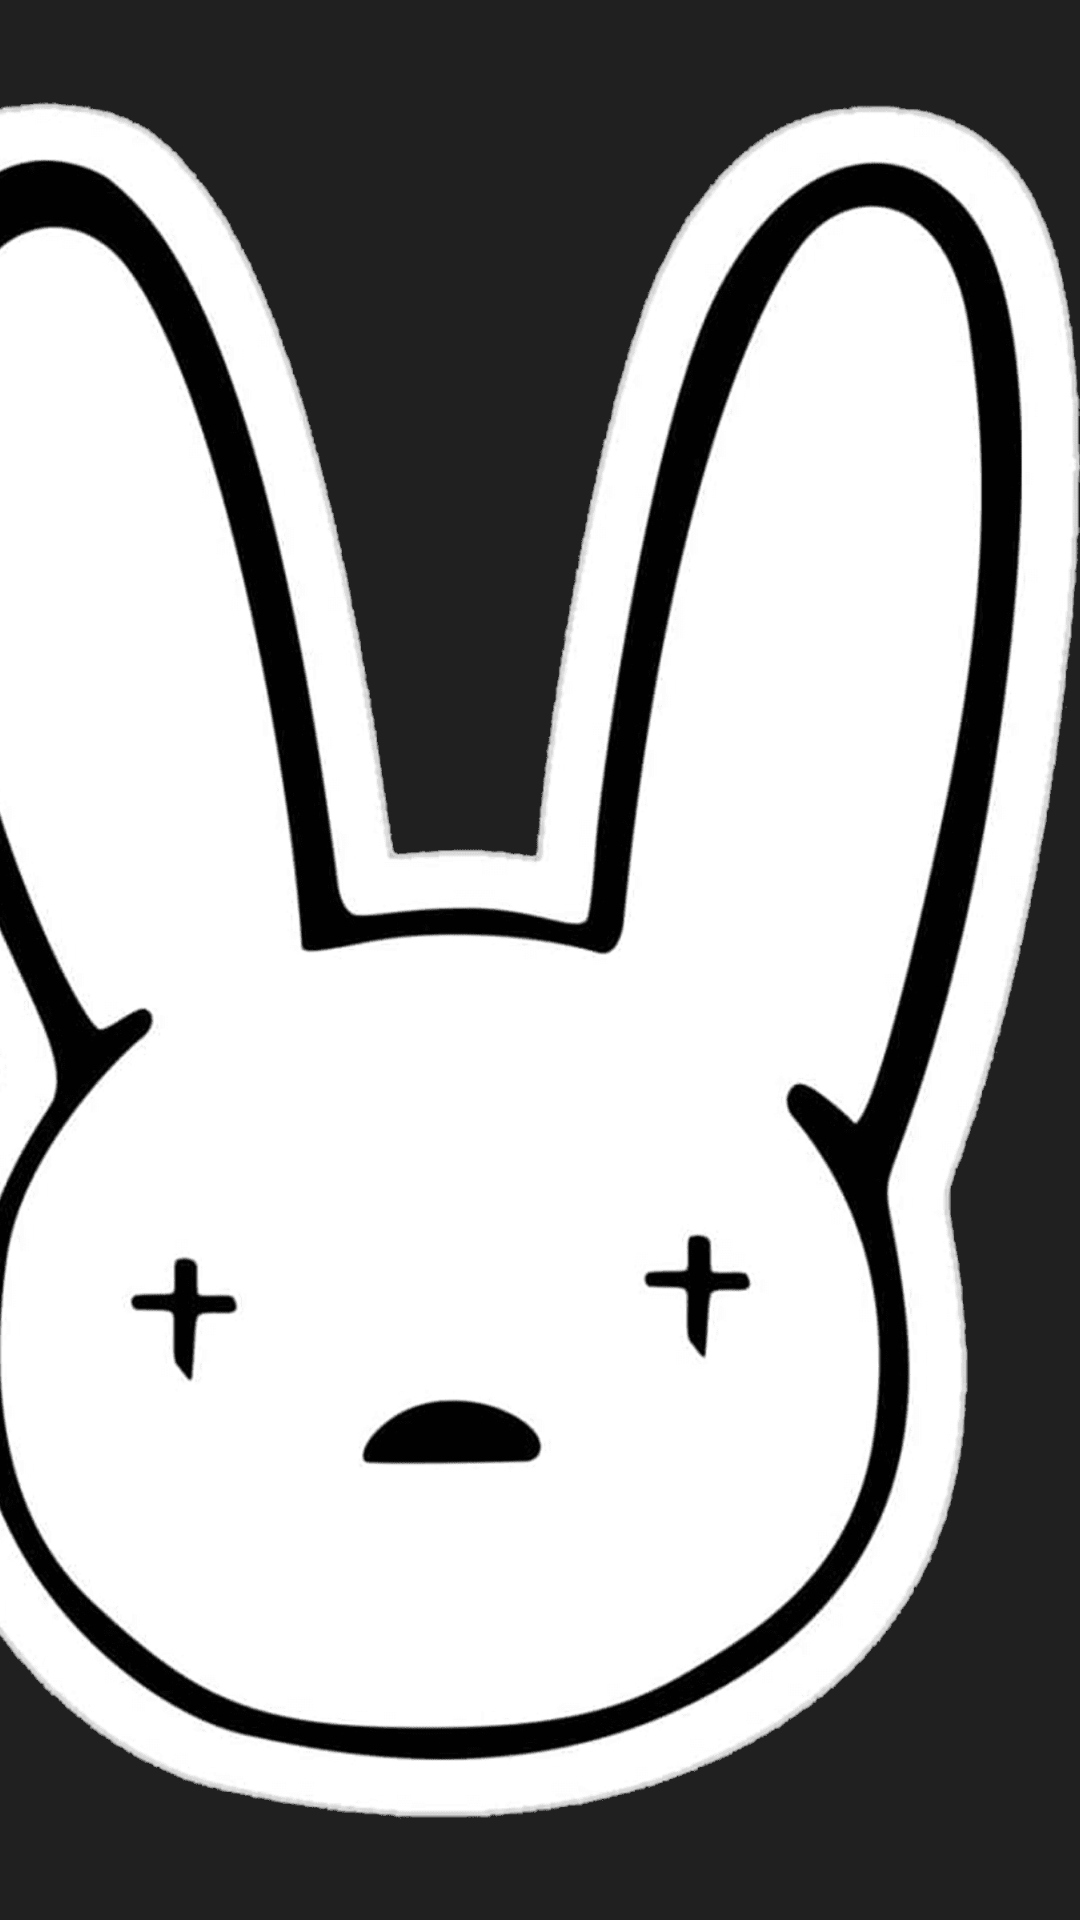 34+] Bad Bunny Logo Wallpapers - WallpaperSafari